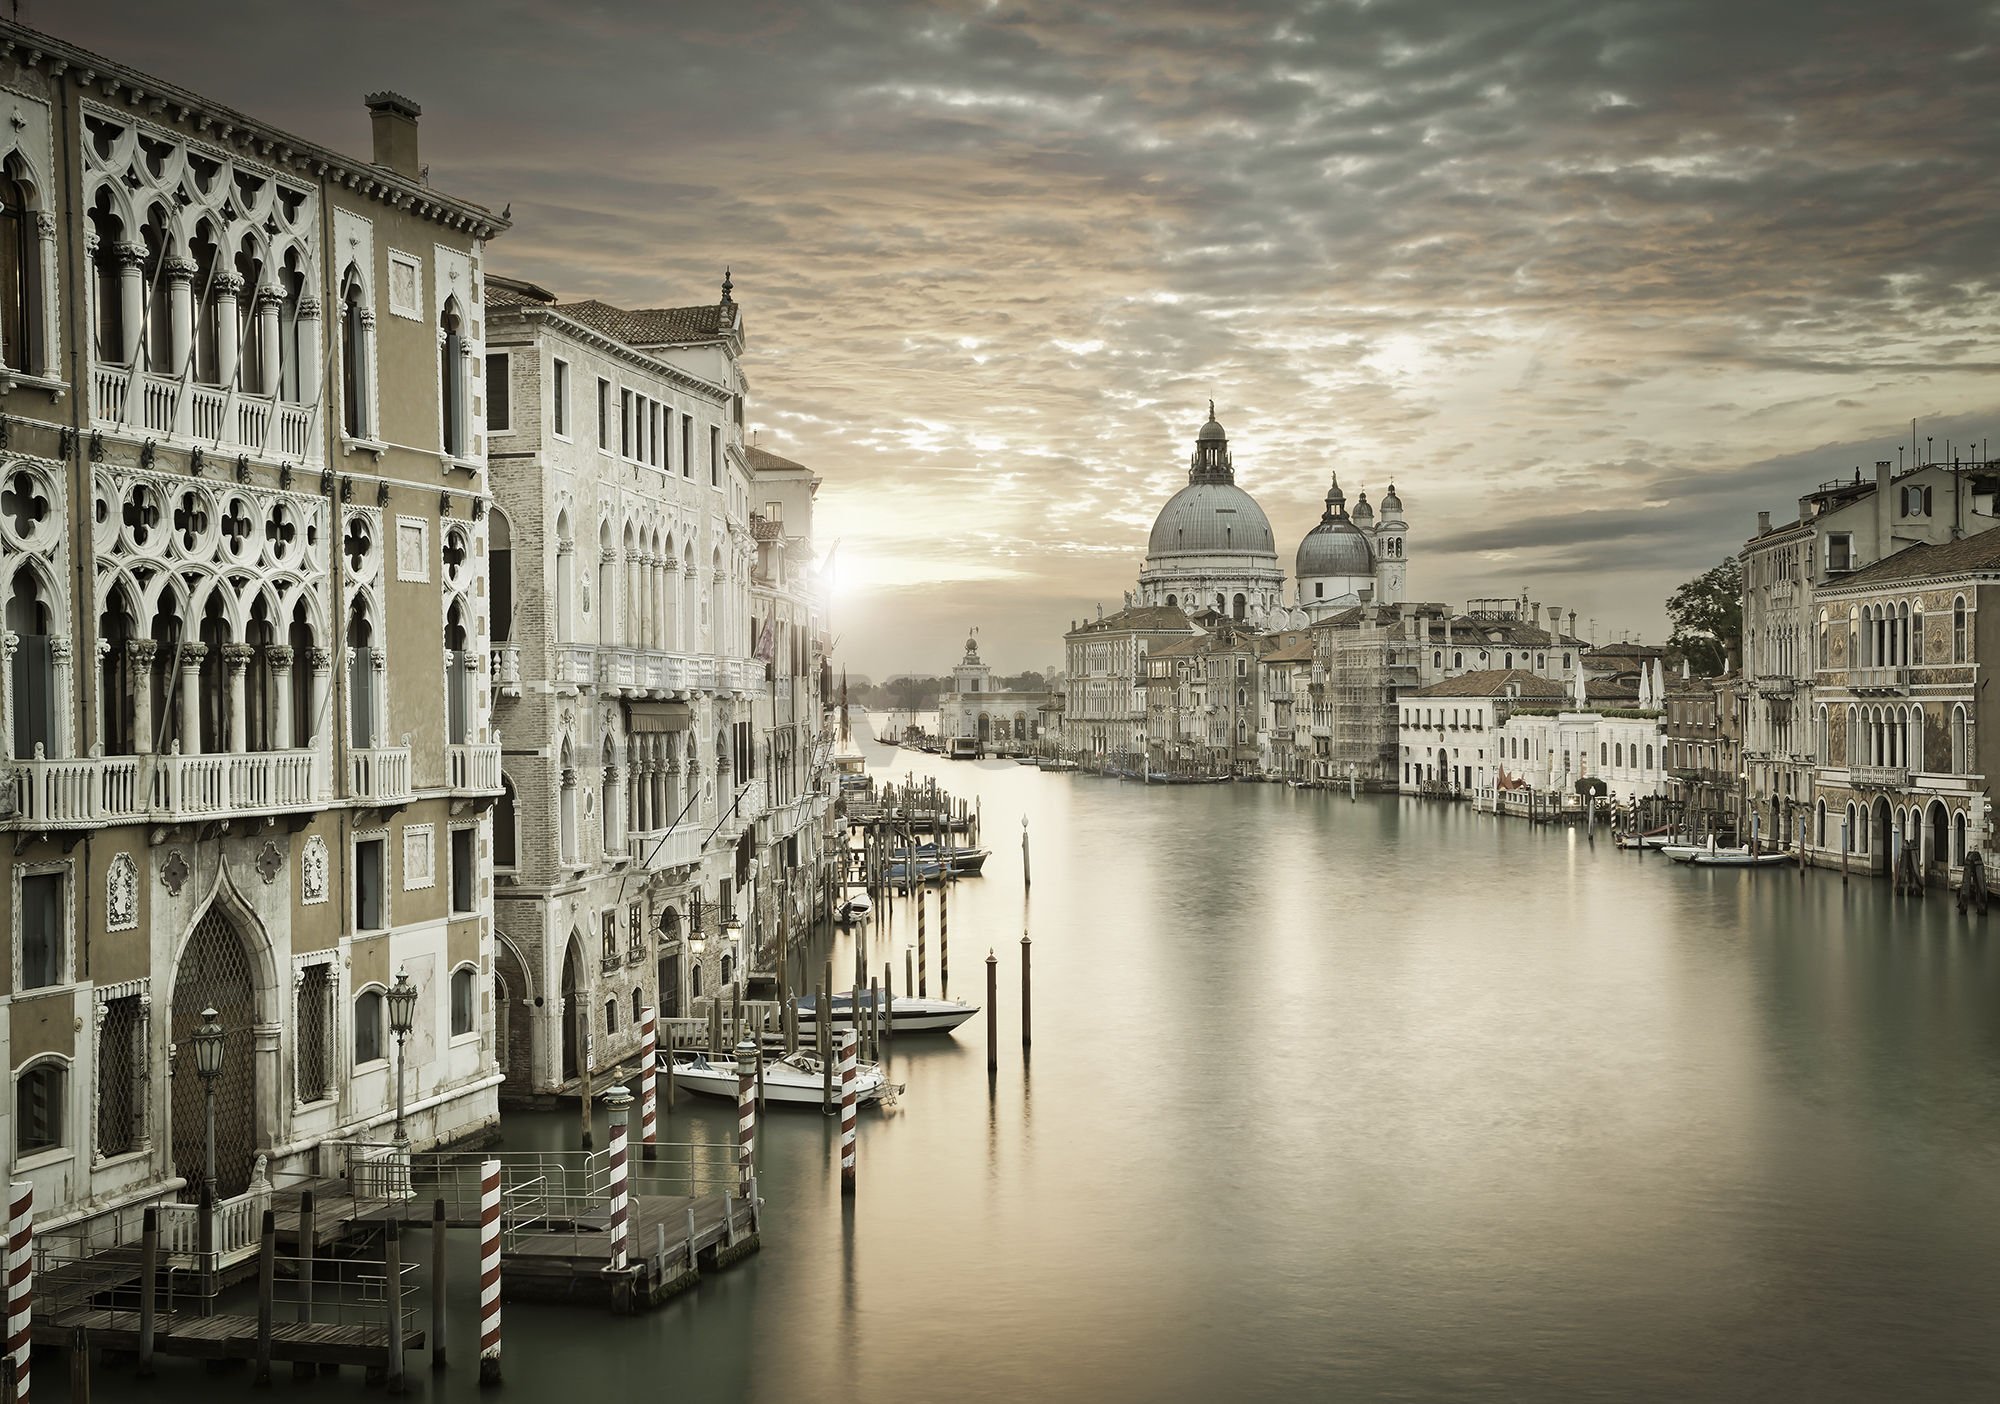 Vlies foto tapeta: Sumrak u Veneciji - 416x254 cm